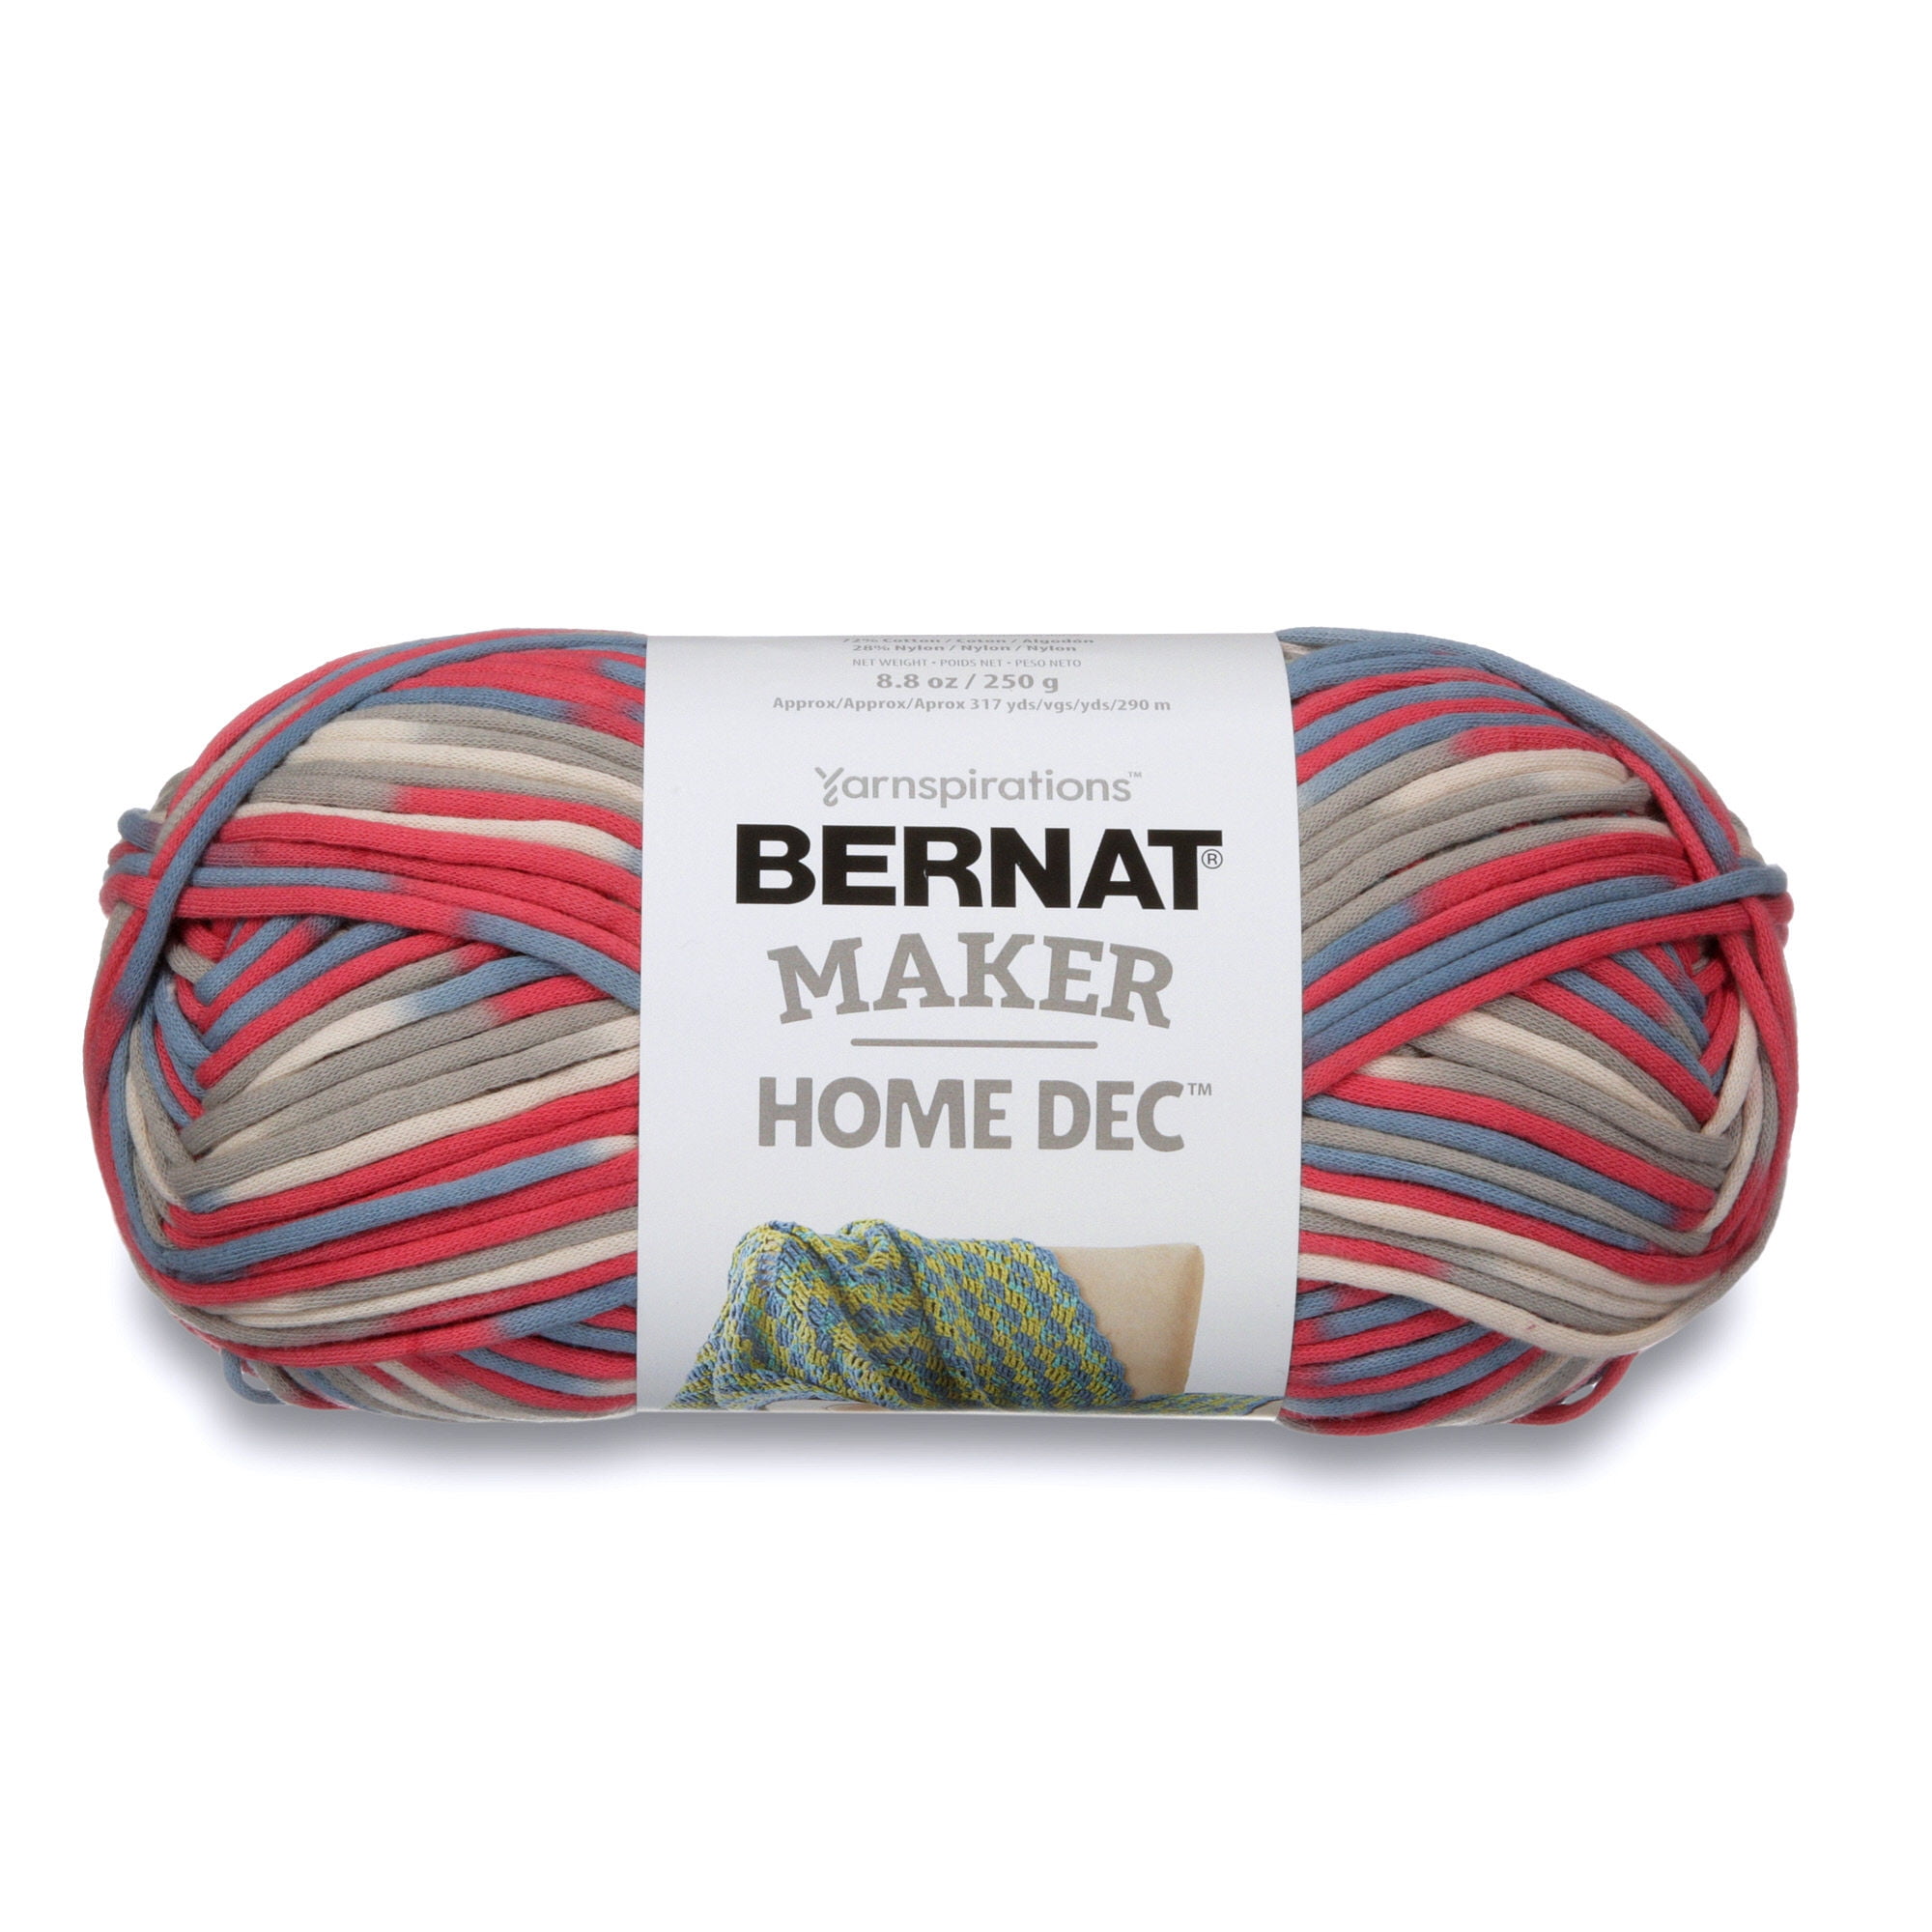 Bernat Bernat Maker Home Dec Yarn-Spice Variegate, 1 count - Kroger